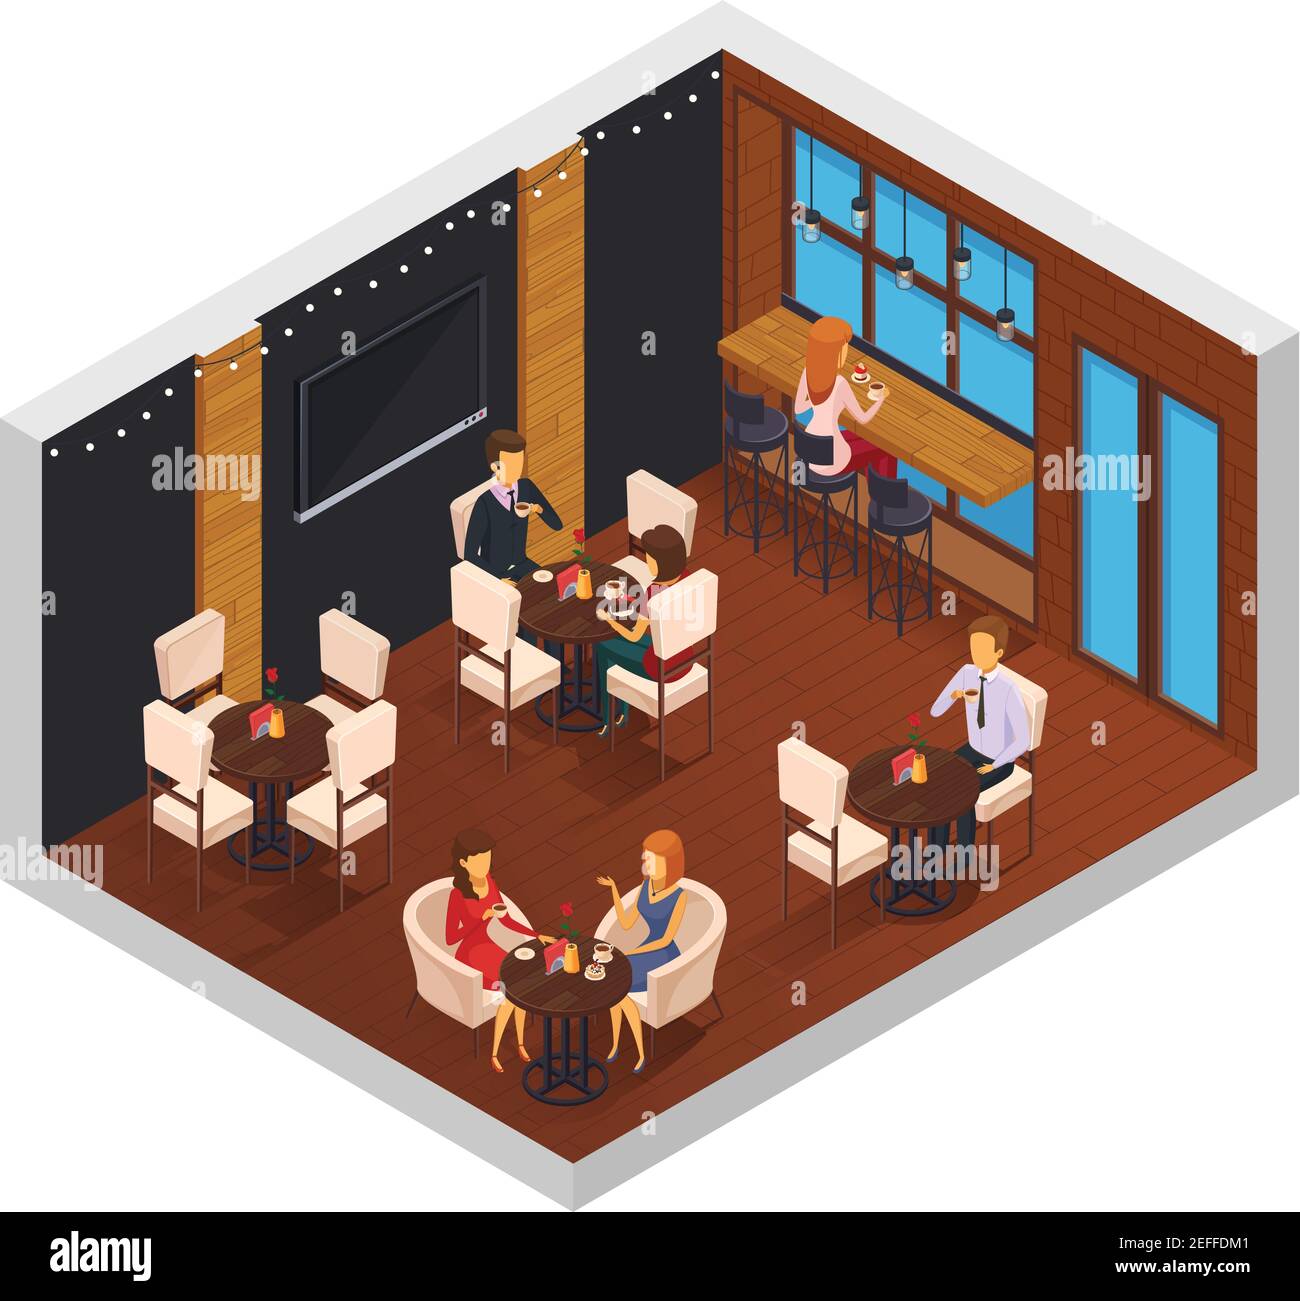 Cafe interno ristorante pizzeria bistrot mensa composizione isometrica con finestra tabelle tv e caratteri del visitatore illustrazione vettoriale Illustrazione Vettoriale